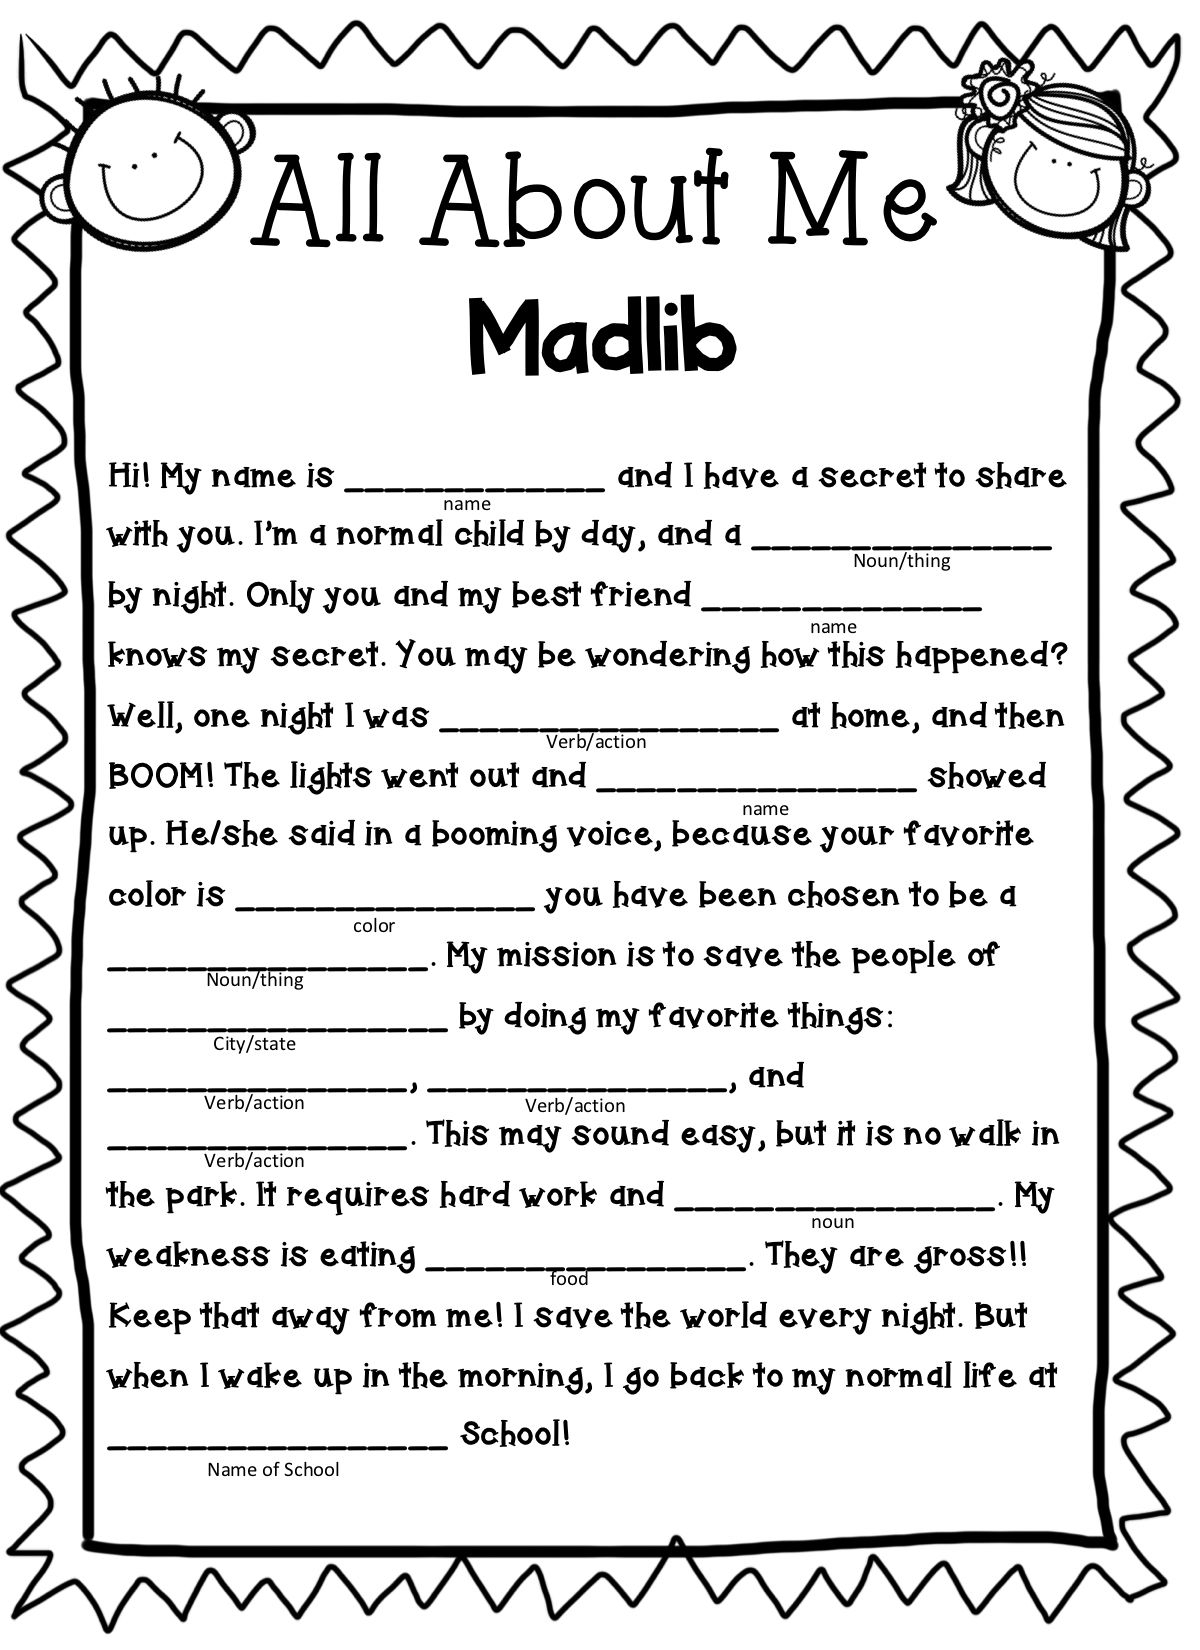 25 Madlibs Ideas Mad Libs Printable Mad Libs Kids Mad Libs Fillable